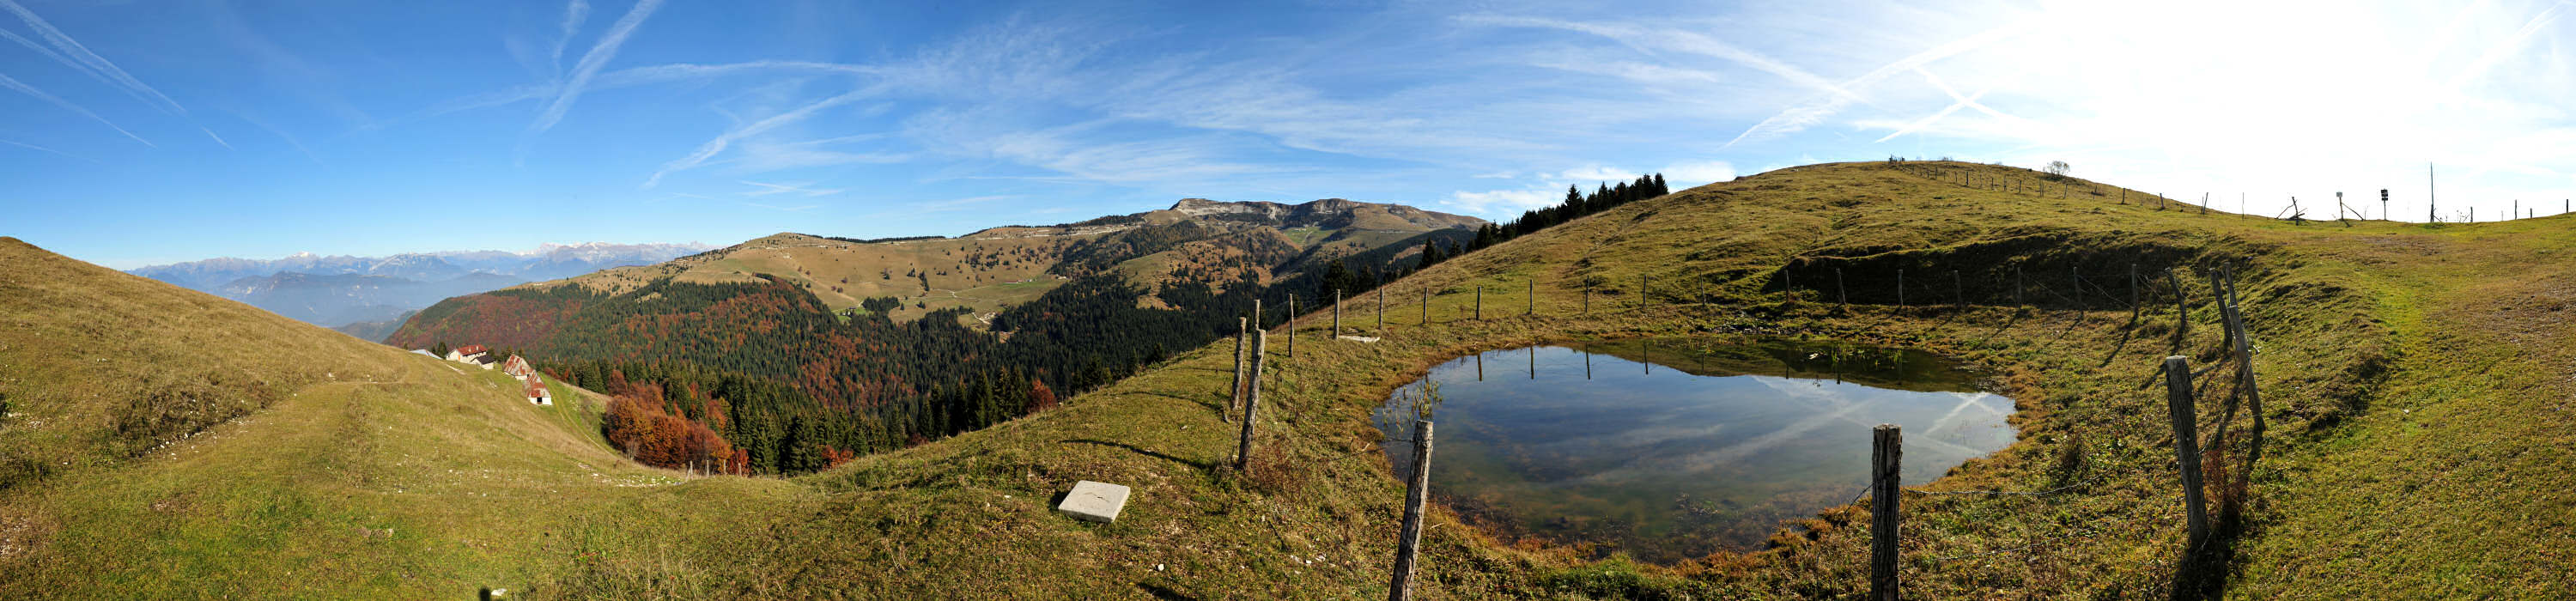 Monte Asolone, Monte Grappa - panoramica